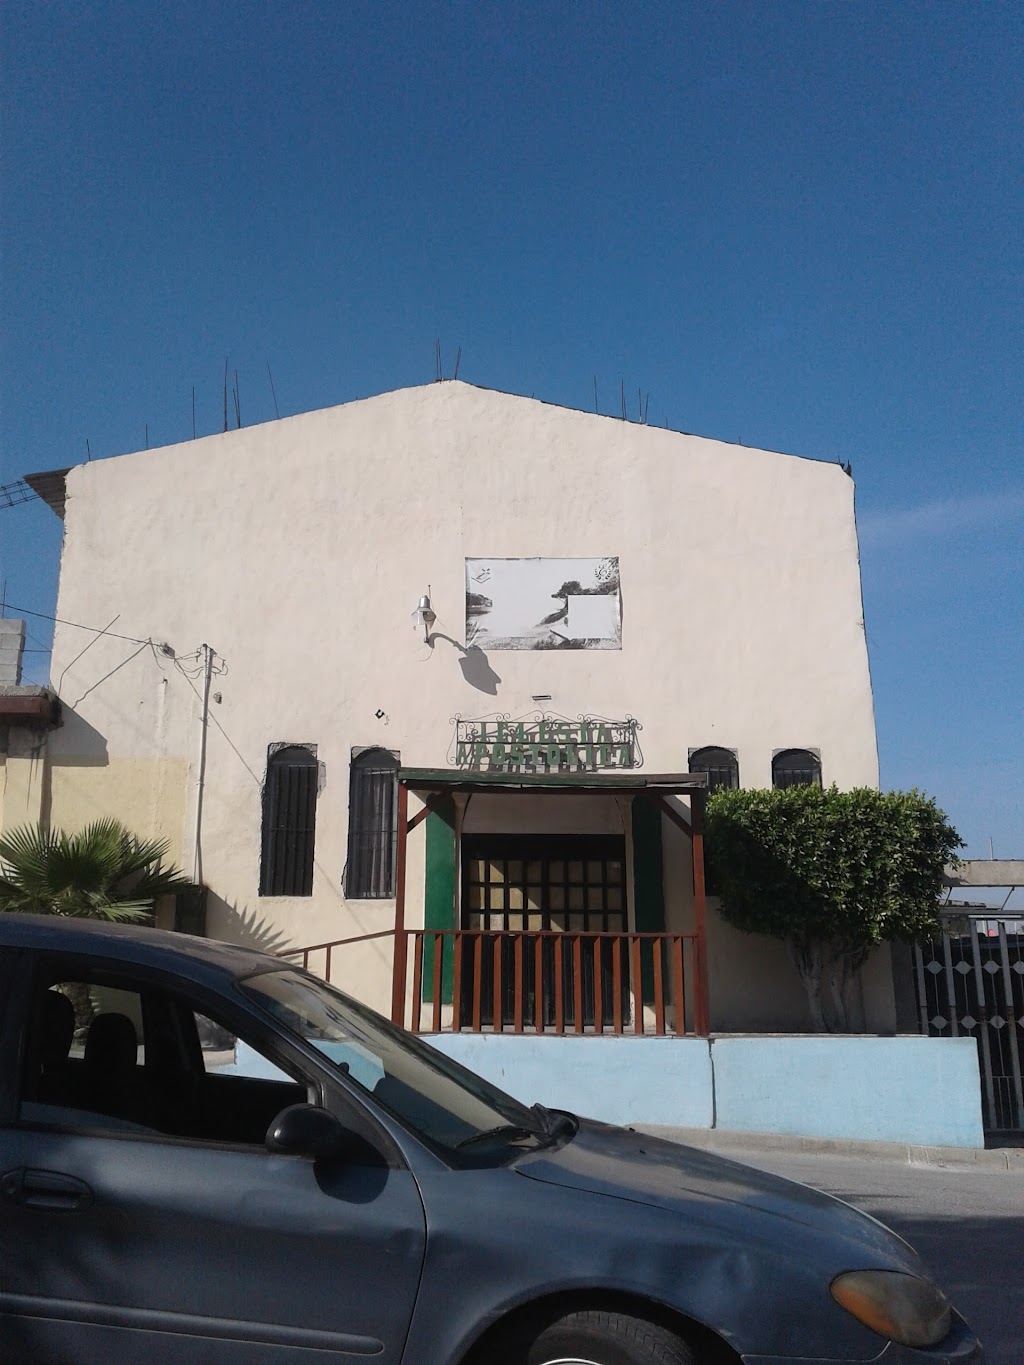 Iglesia Apostólica de la Fe en Cristo Jesús #28 A.R | Tibuquina 10010, La Morita, 22245 Tijuana, B.C., Mexico | Phone: 664 701 7651